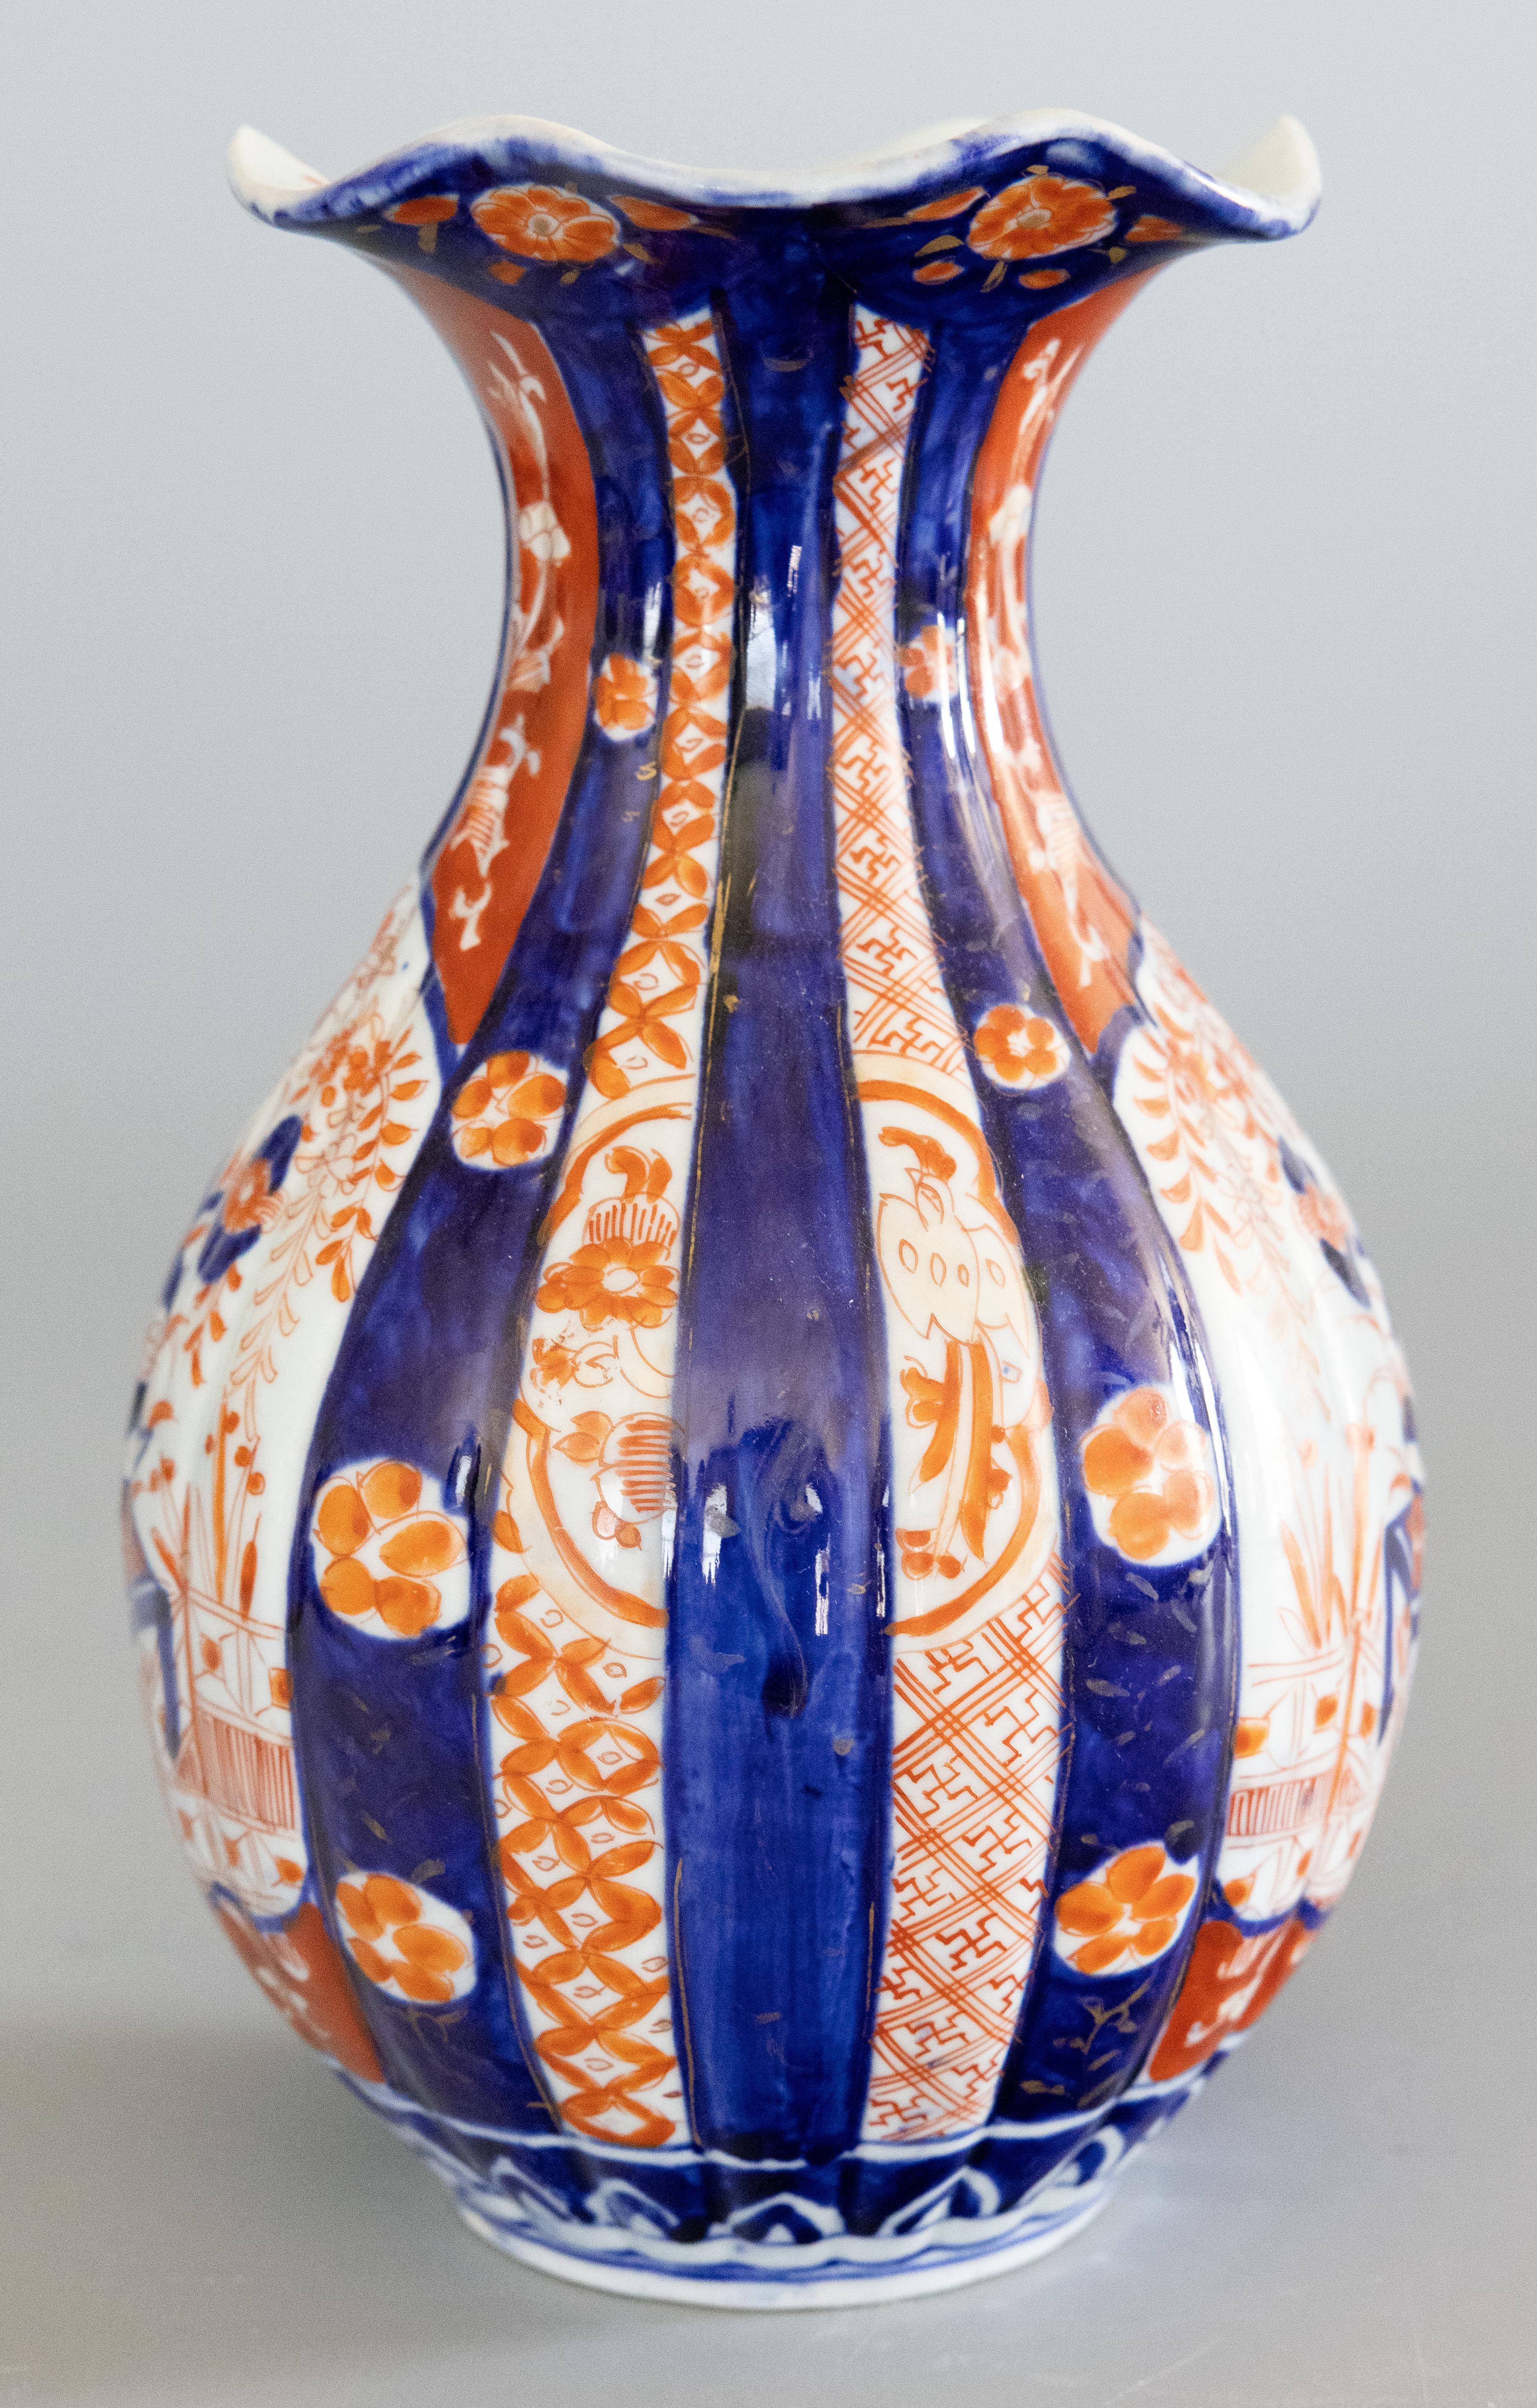 Magnifique vase japonais Imari du XIXe siècle de la période Meiji, vers 1870. Ce vase fin a une belle forme cannelée, un bord festonné et un motif floral peint à la main dans les couleurs traditionnelles d'Imari. Il est dans un état antique